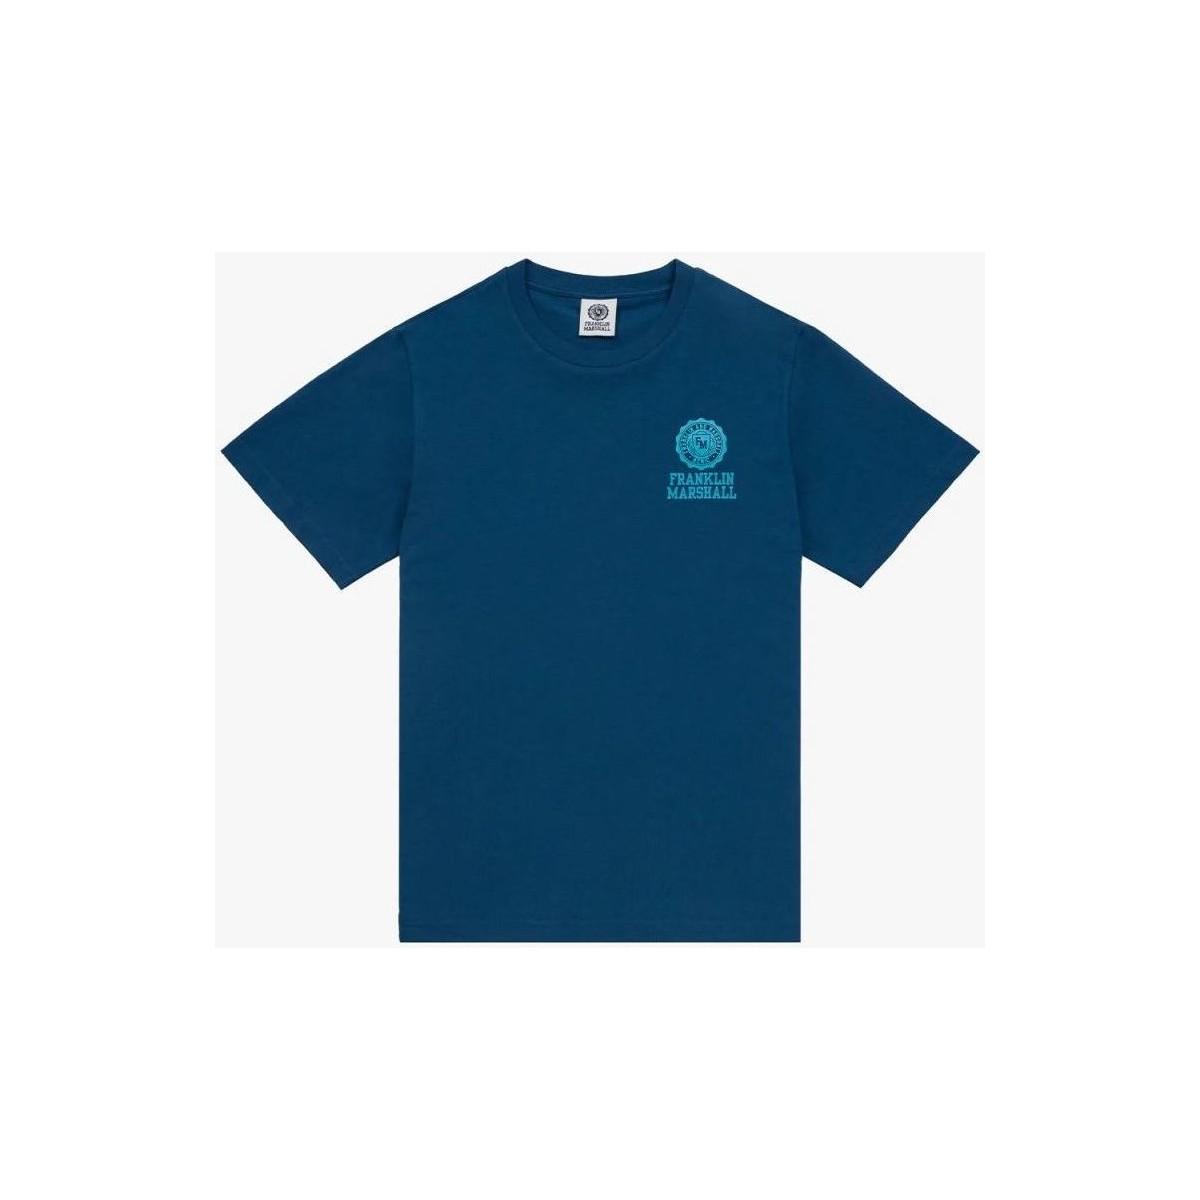 Textil Maison Kitsuné logo patch pocket t-shirt JM3012.1000P01-252 Azul